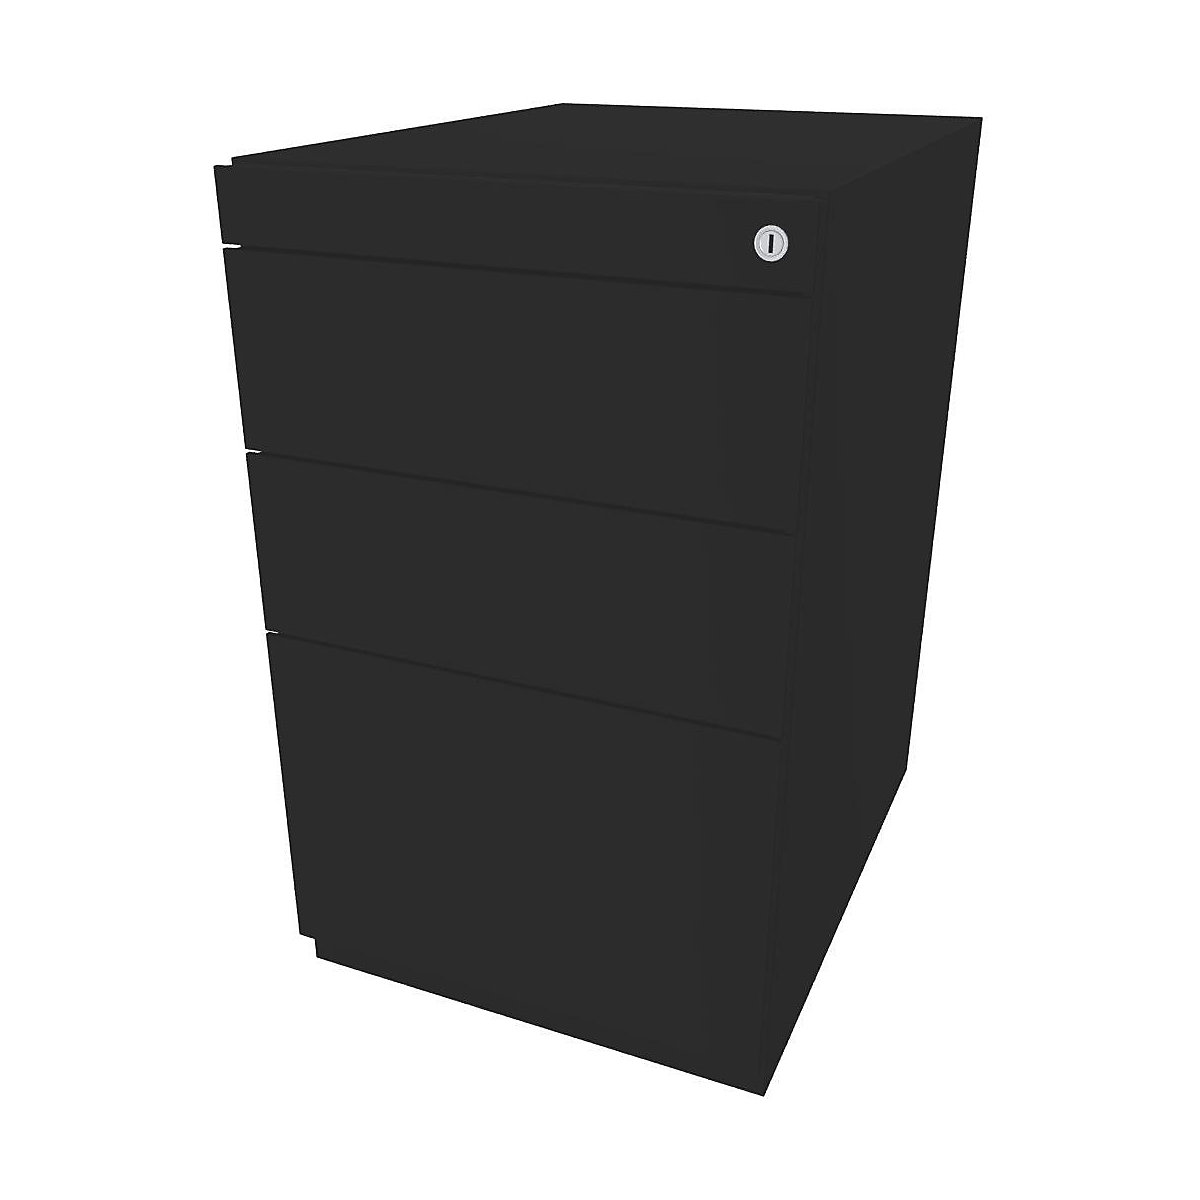 Stacionární kontejner Note™, se 2 univerzálními zásuvkami, 1 kartotékou pro závěsné složky – BISLEY, bez horní krycí desky, hloubka 565 mm, černá-4